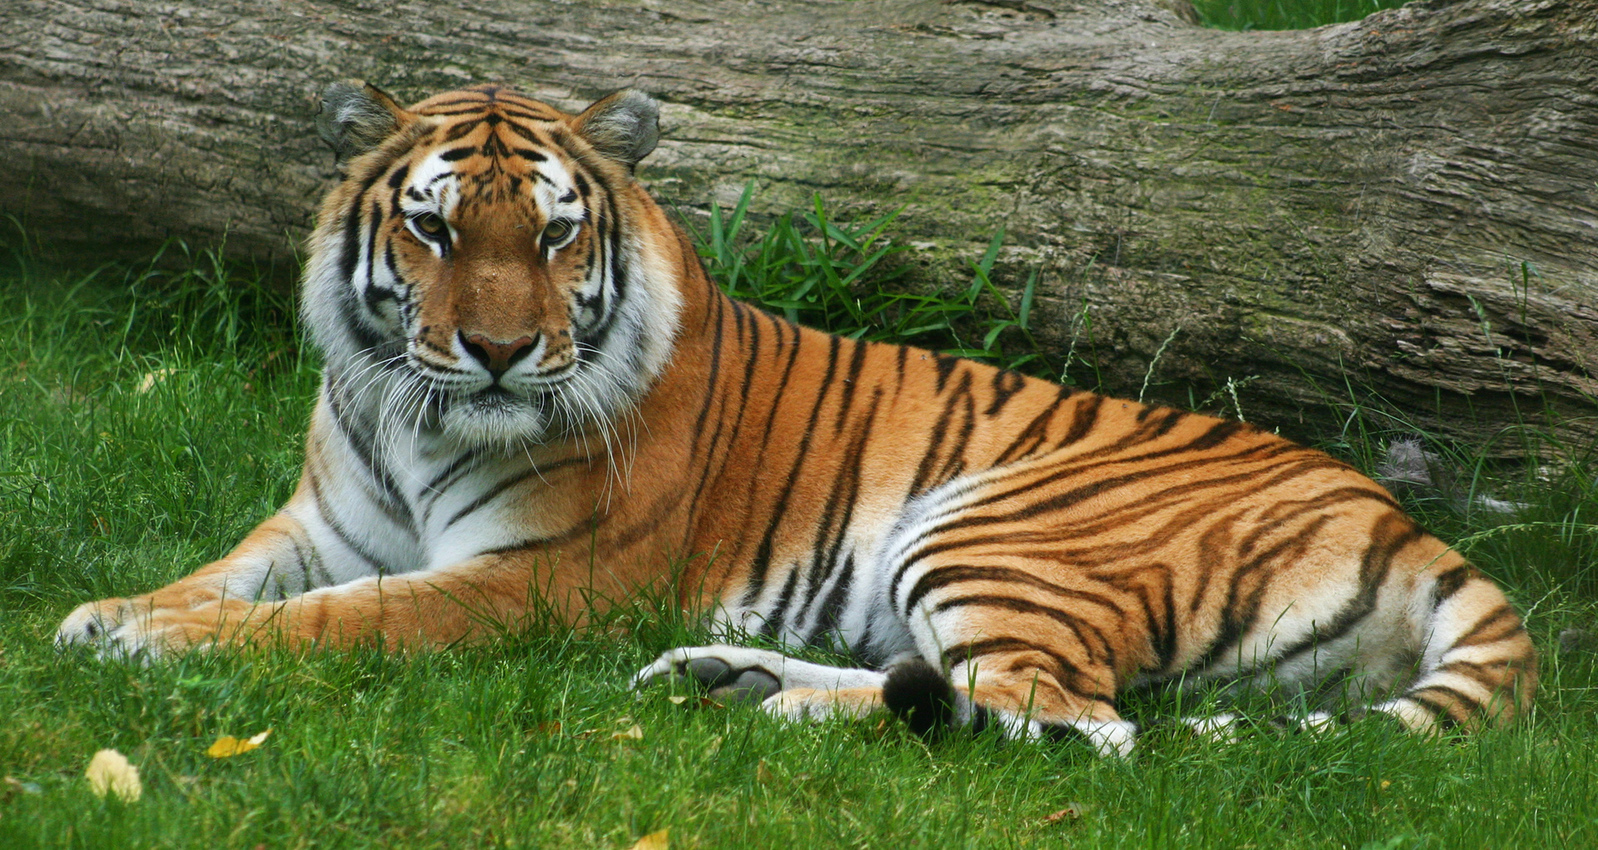 A tiger lies by a fallen log.